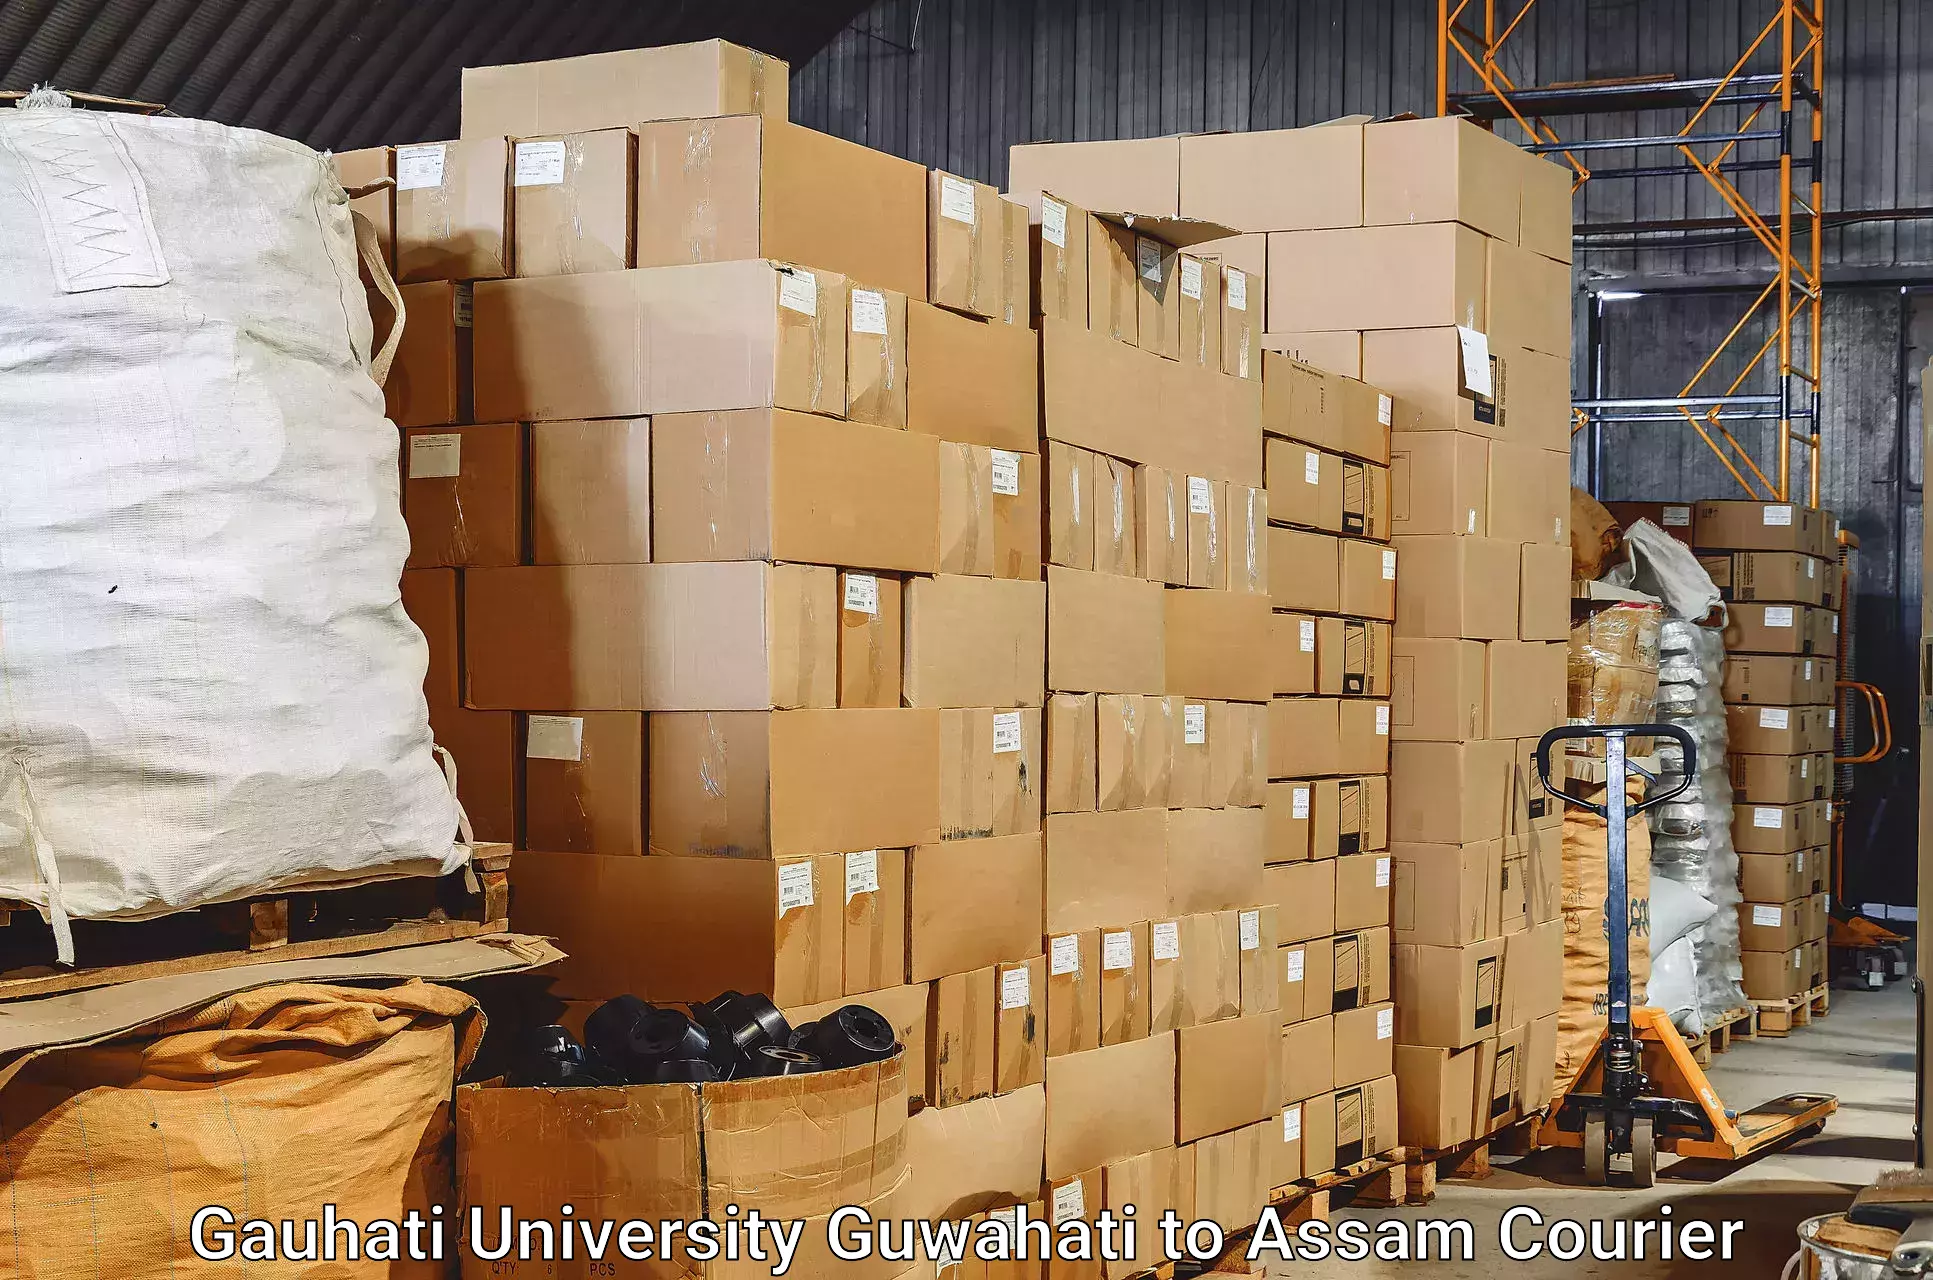 Baggage transport management Gauhati University Guwahati to Jagiroad